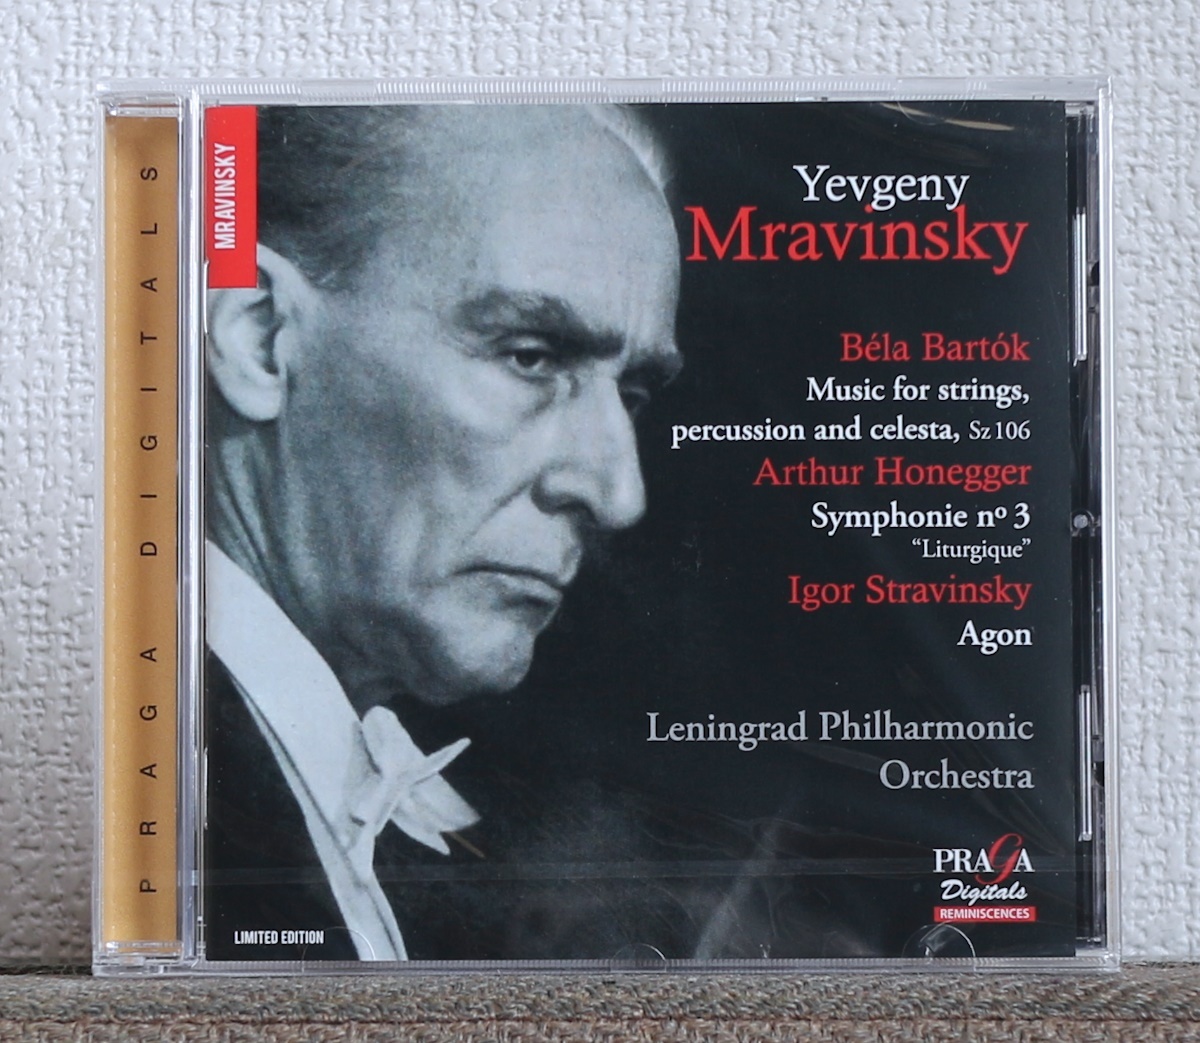 品薄/限定盤/CD/SACD/ムラヴィンスキー/バルトーク/ストラヴィンスキー/オネゲル/Mravinsky/Bartok/Stravinsky/Honegger/アゴン/Agon_画像1